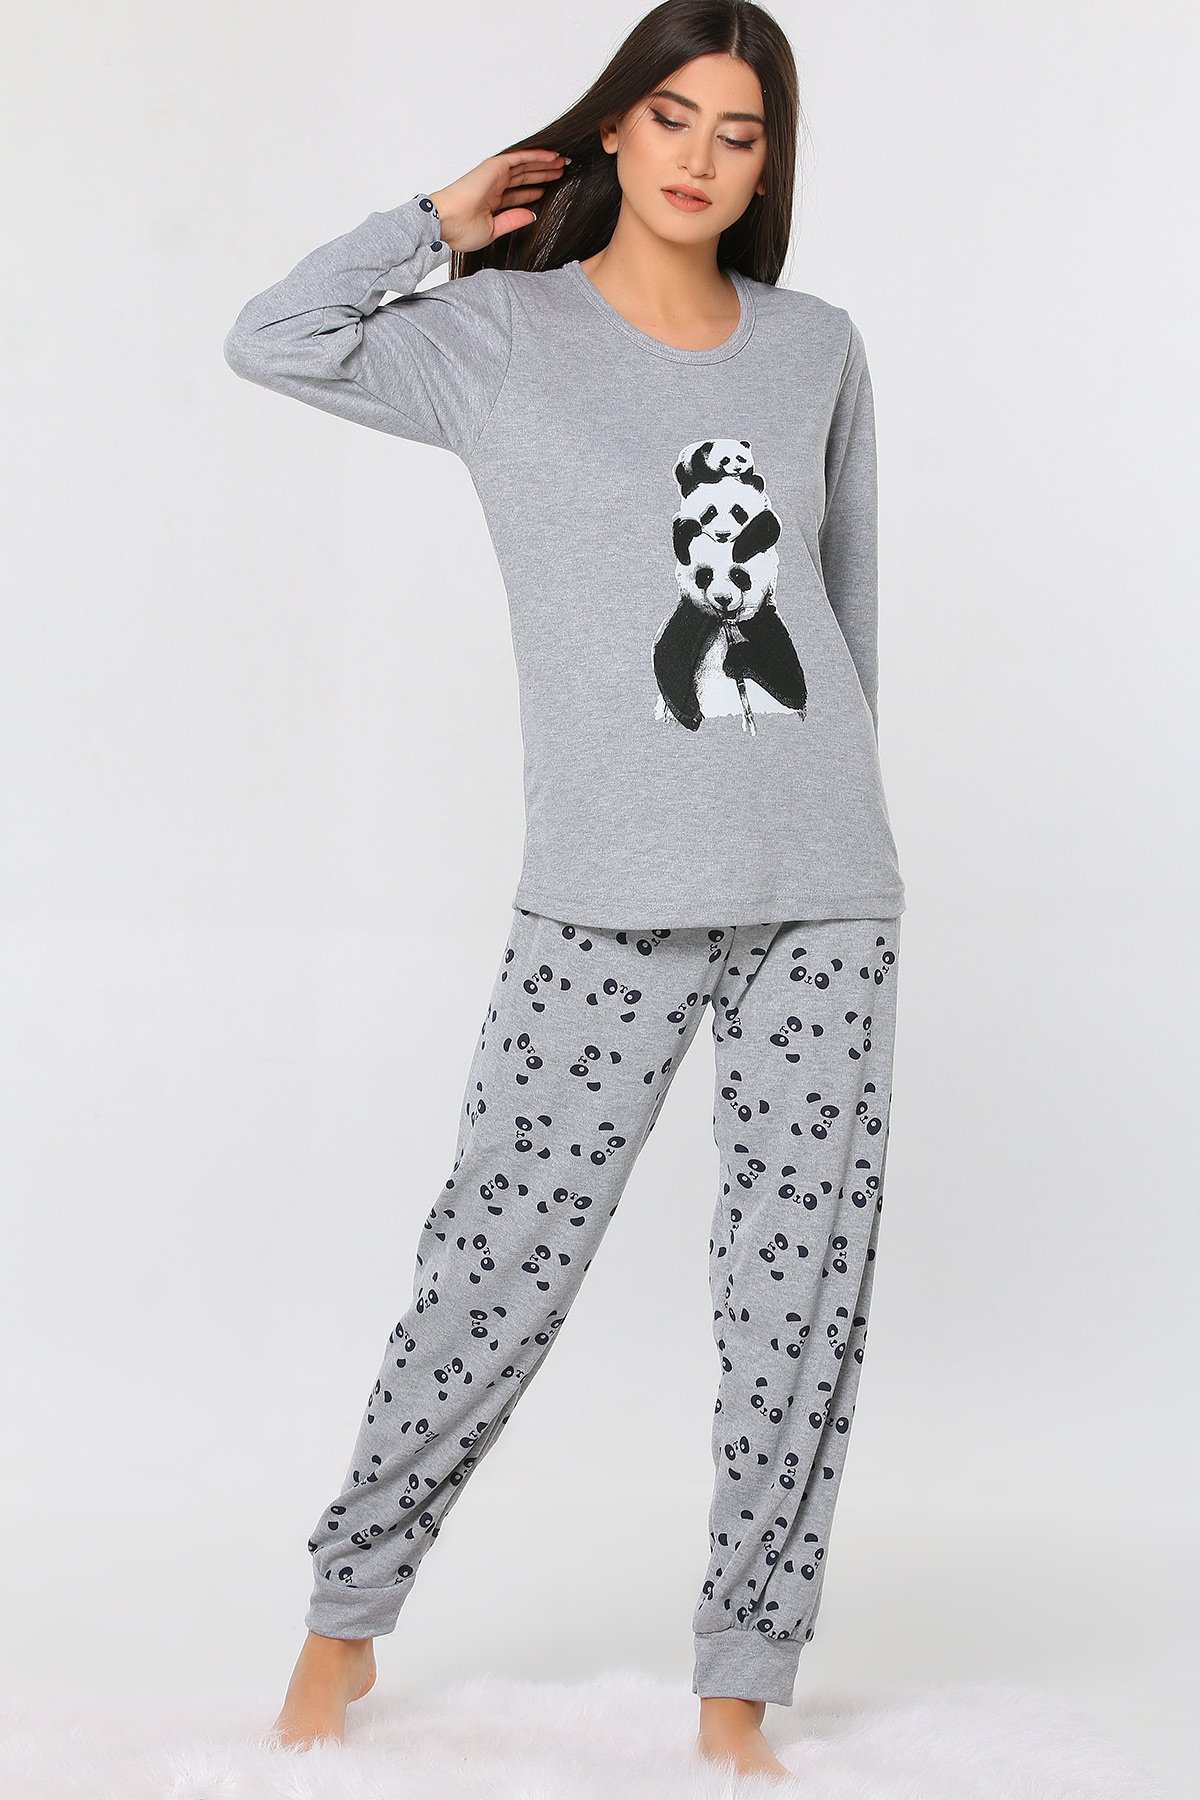 Gri Panda Baskılı Desenli Kadın Pijama Takımı 428536- tozlu.com